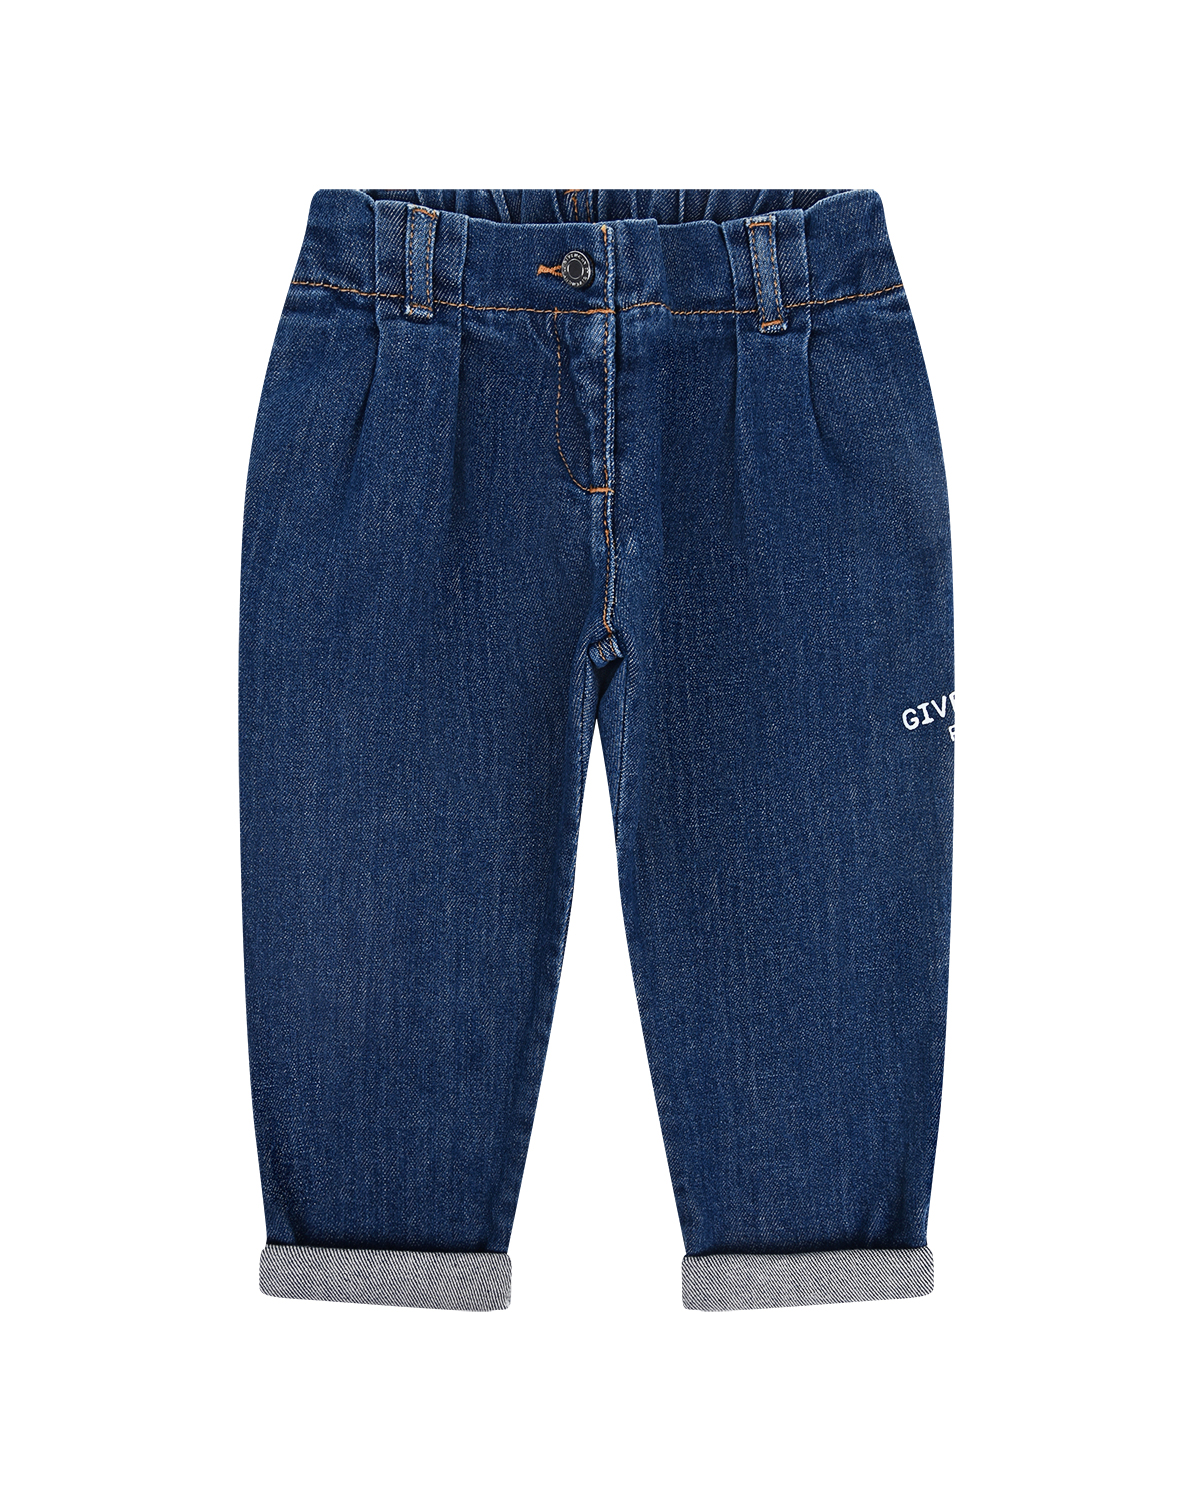 Синие джинсы с вышивкой Givenchy детские